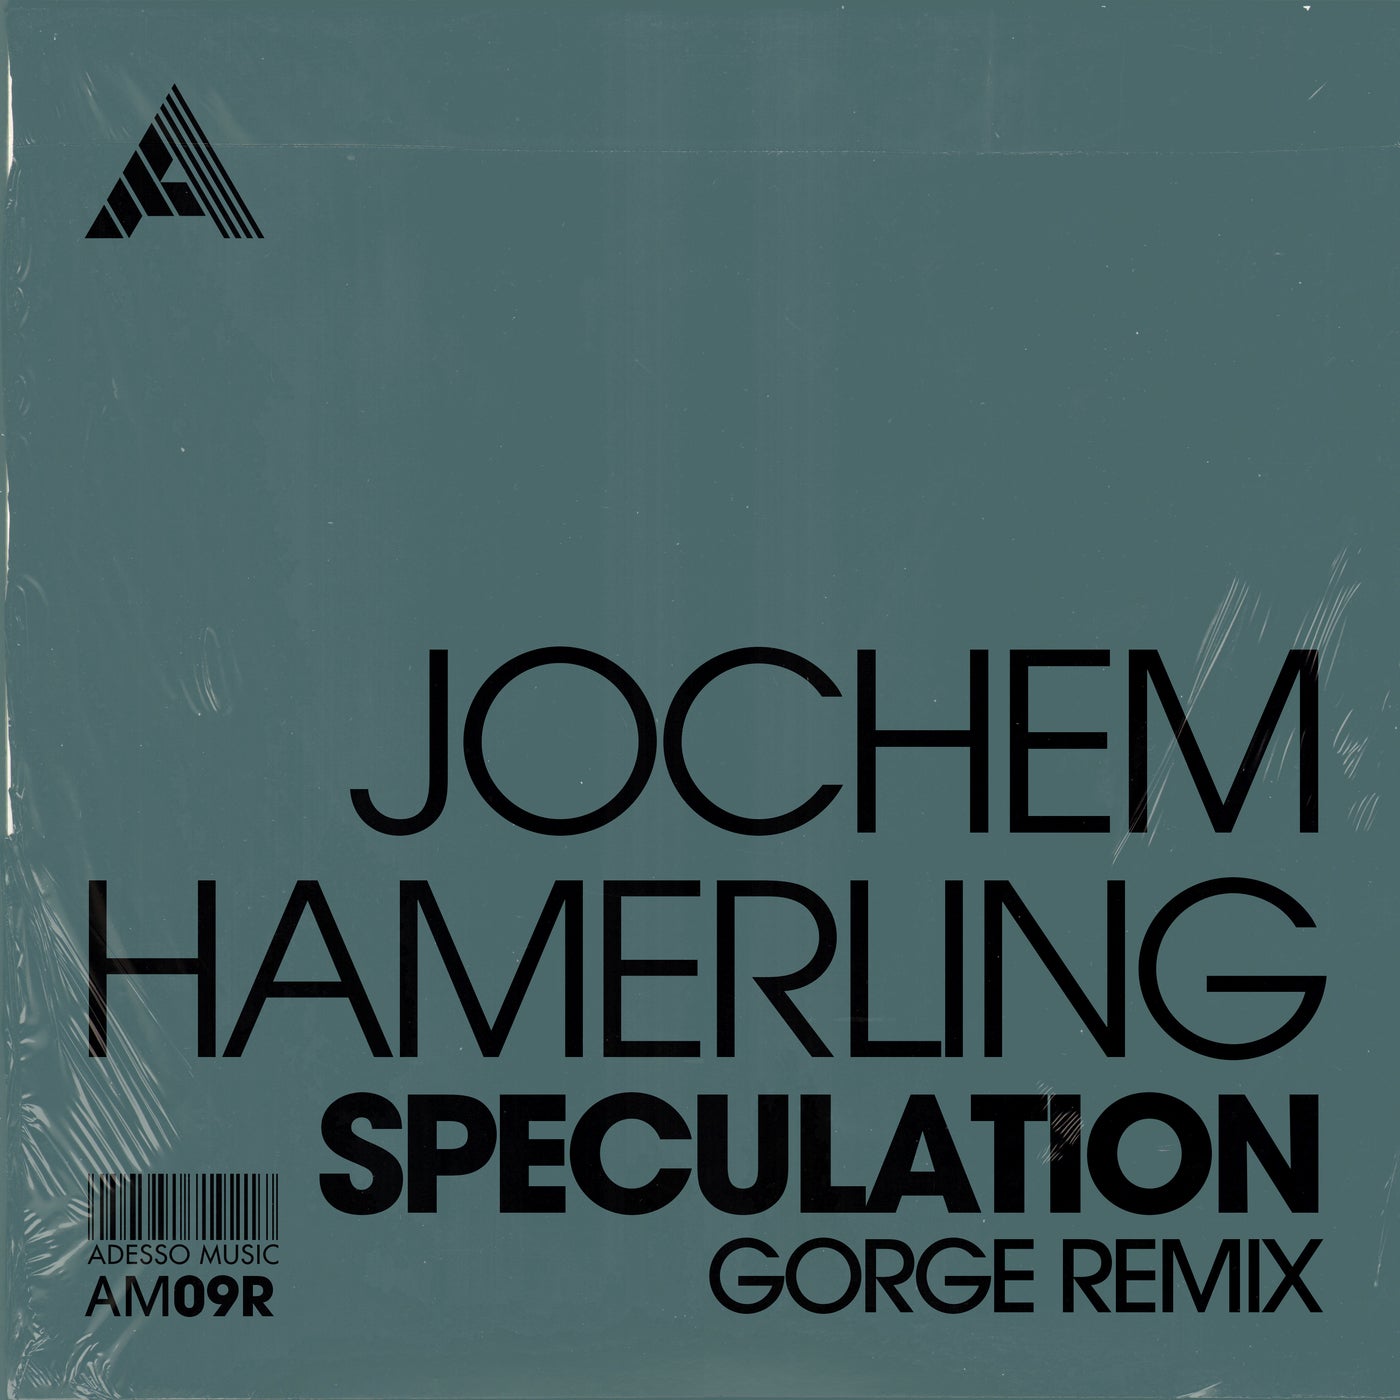 Jochem Hamerling - Speculation (Gorge Remix) - Extended Mix [AM09R2]